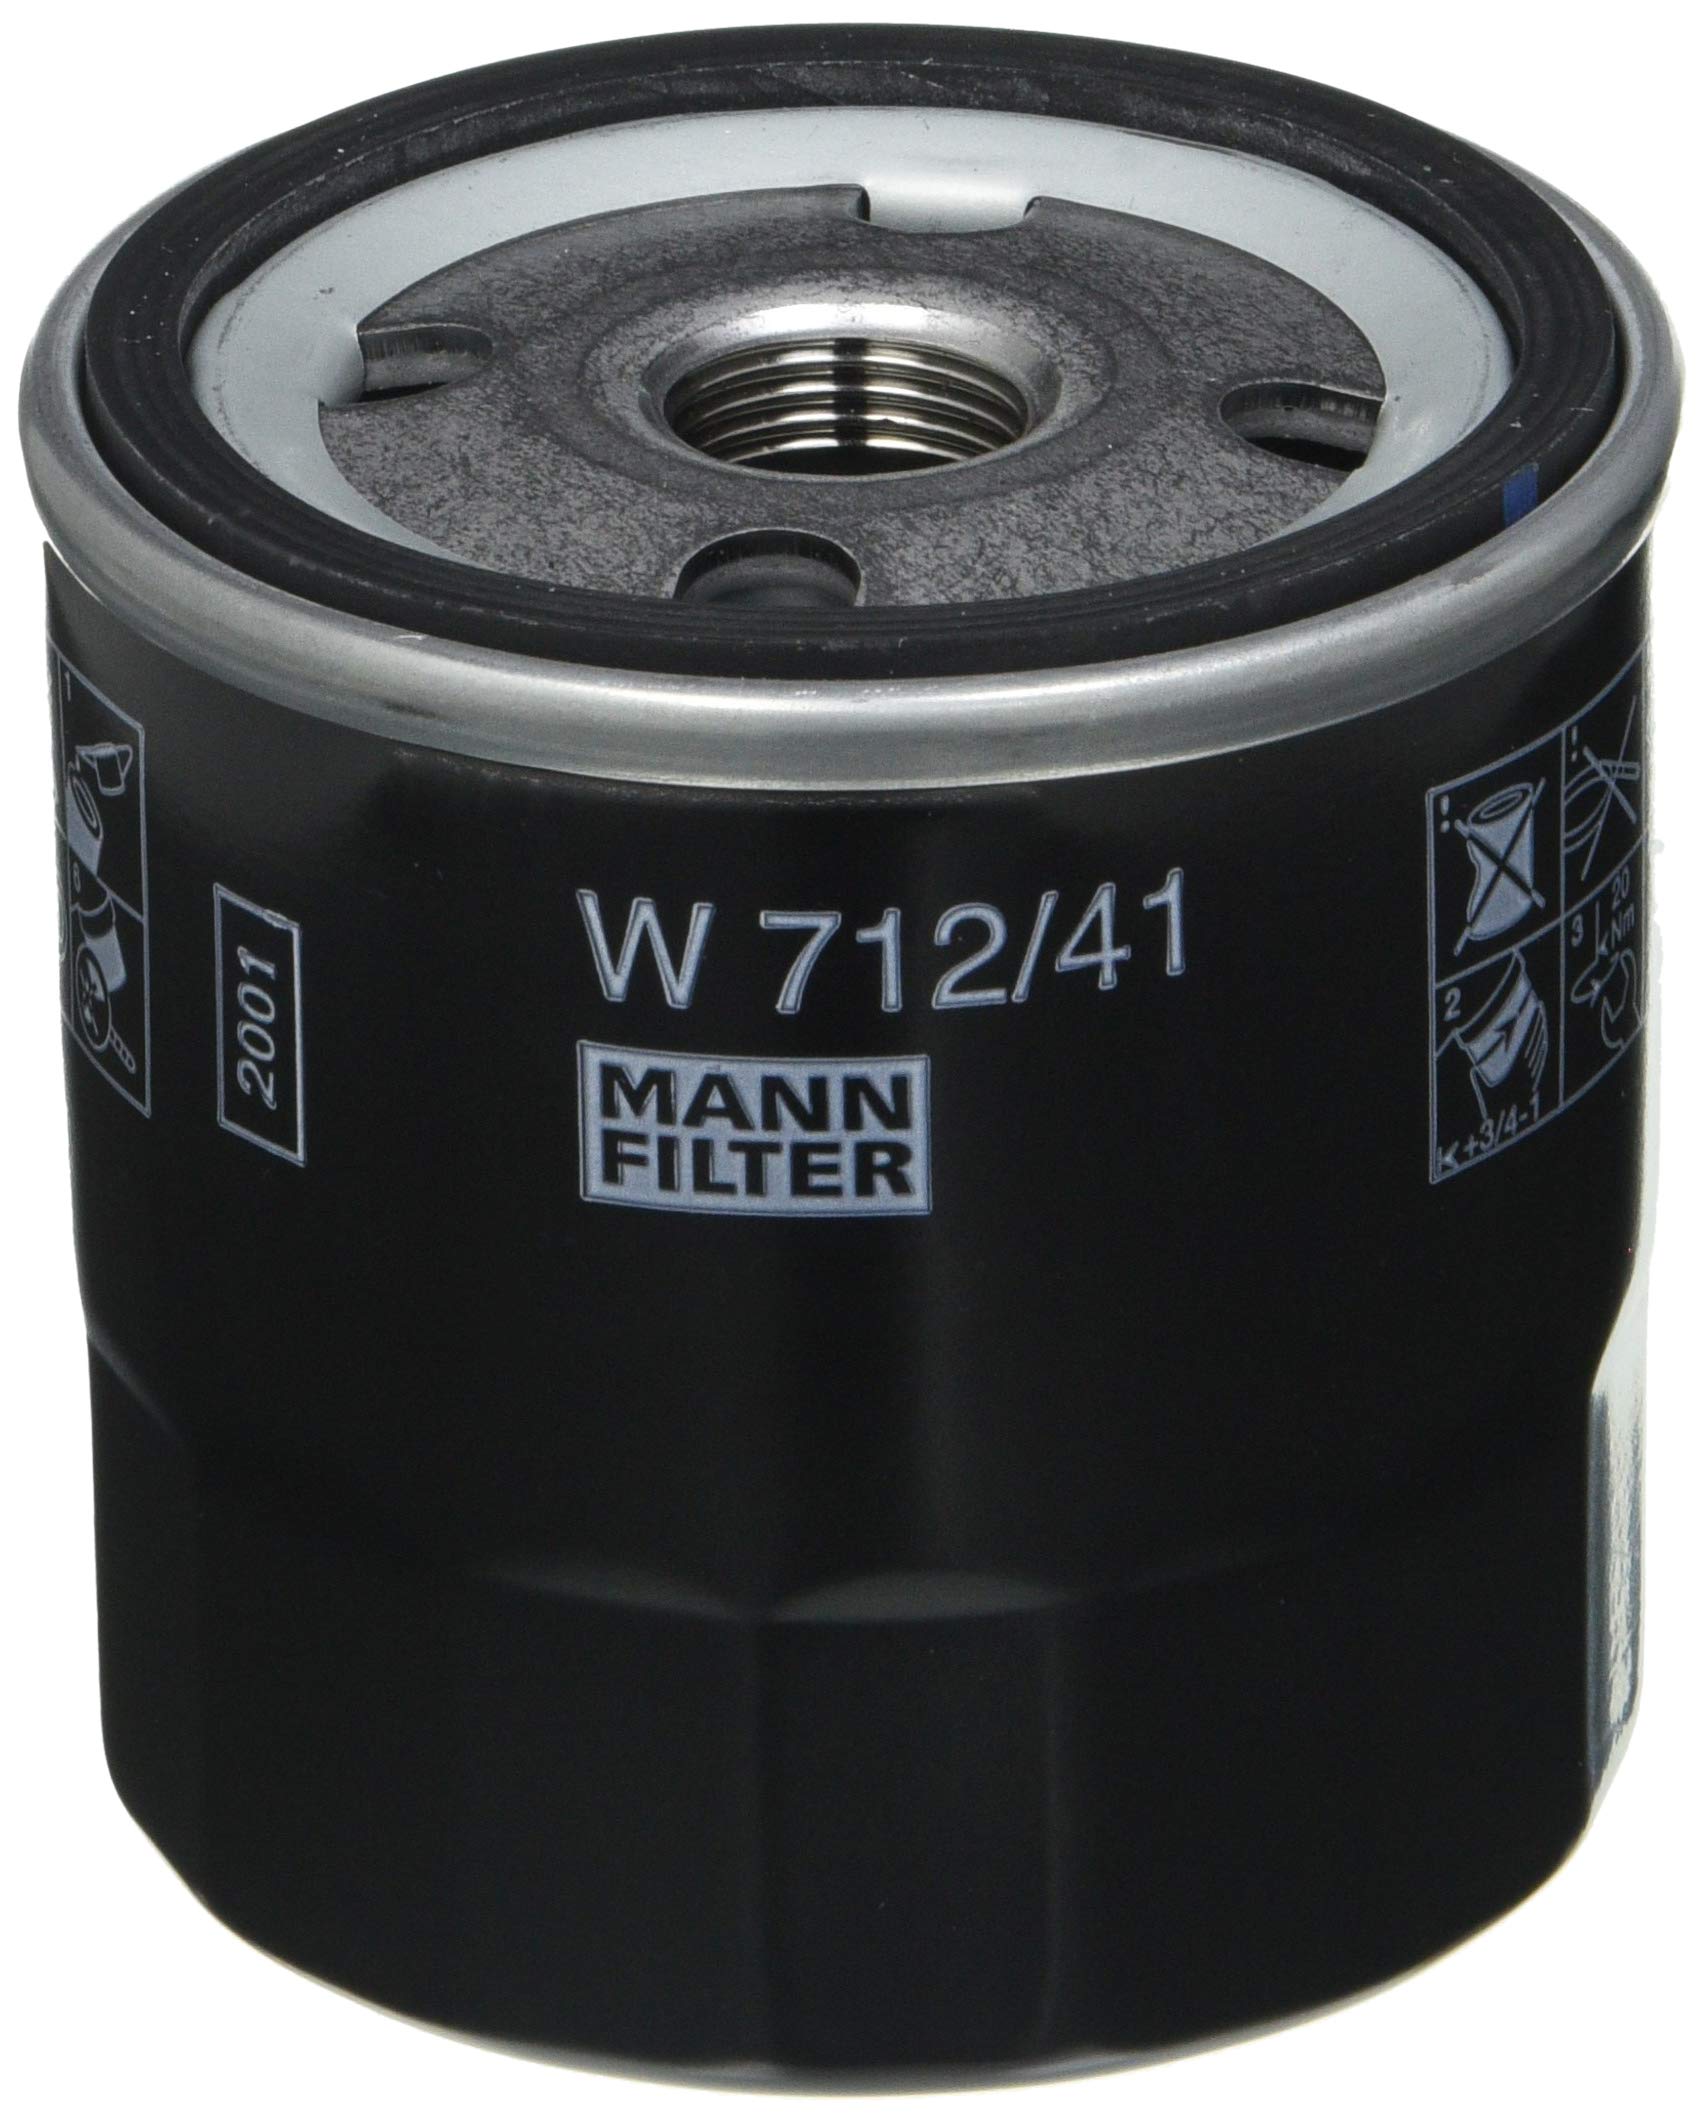 MANN-FILTER W 712/41 Ölfilter – Für PKW von MANN-FILTER